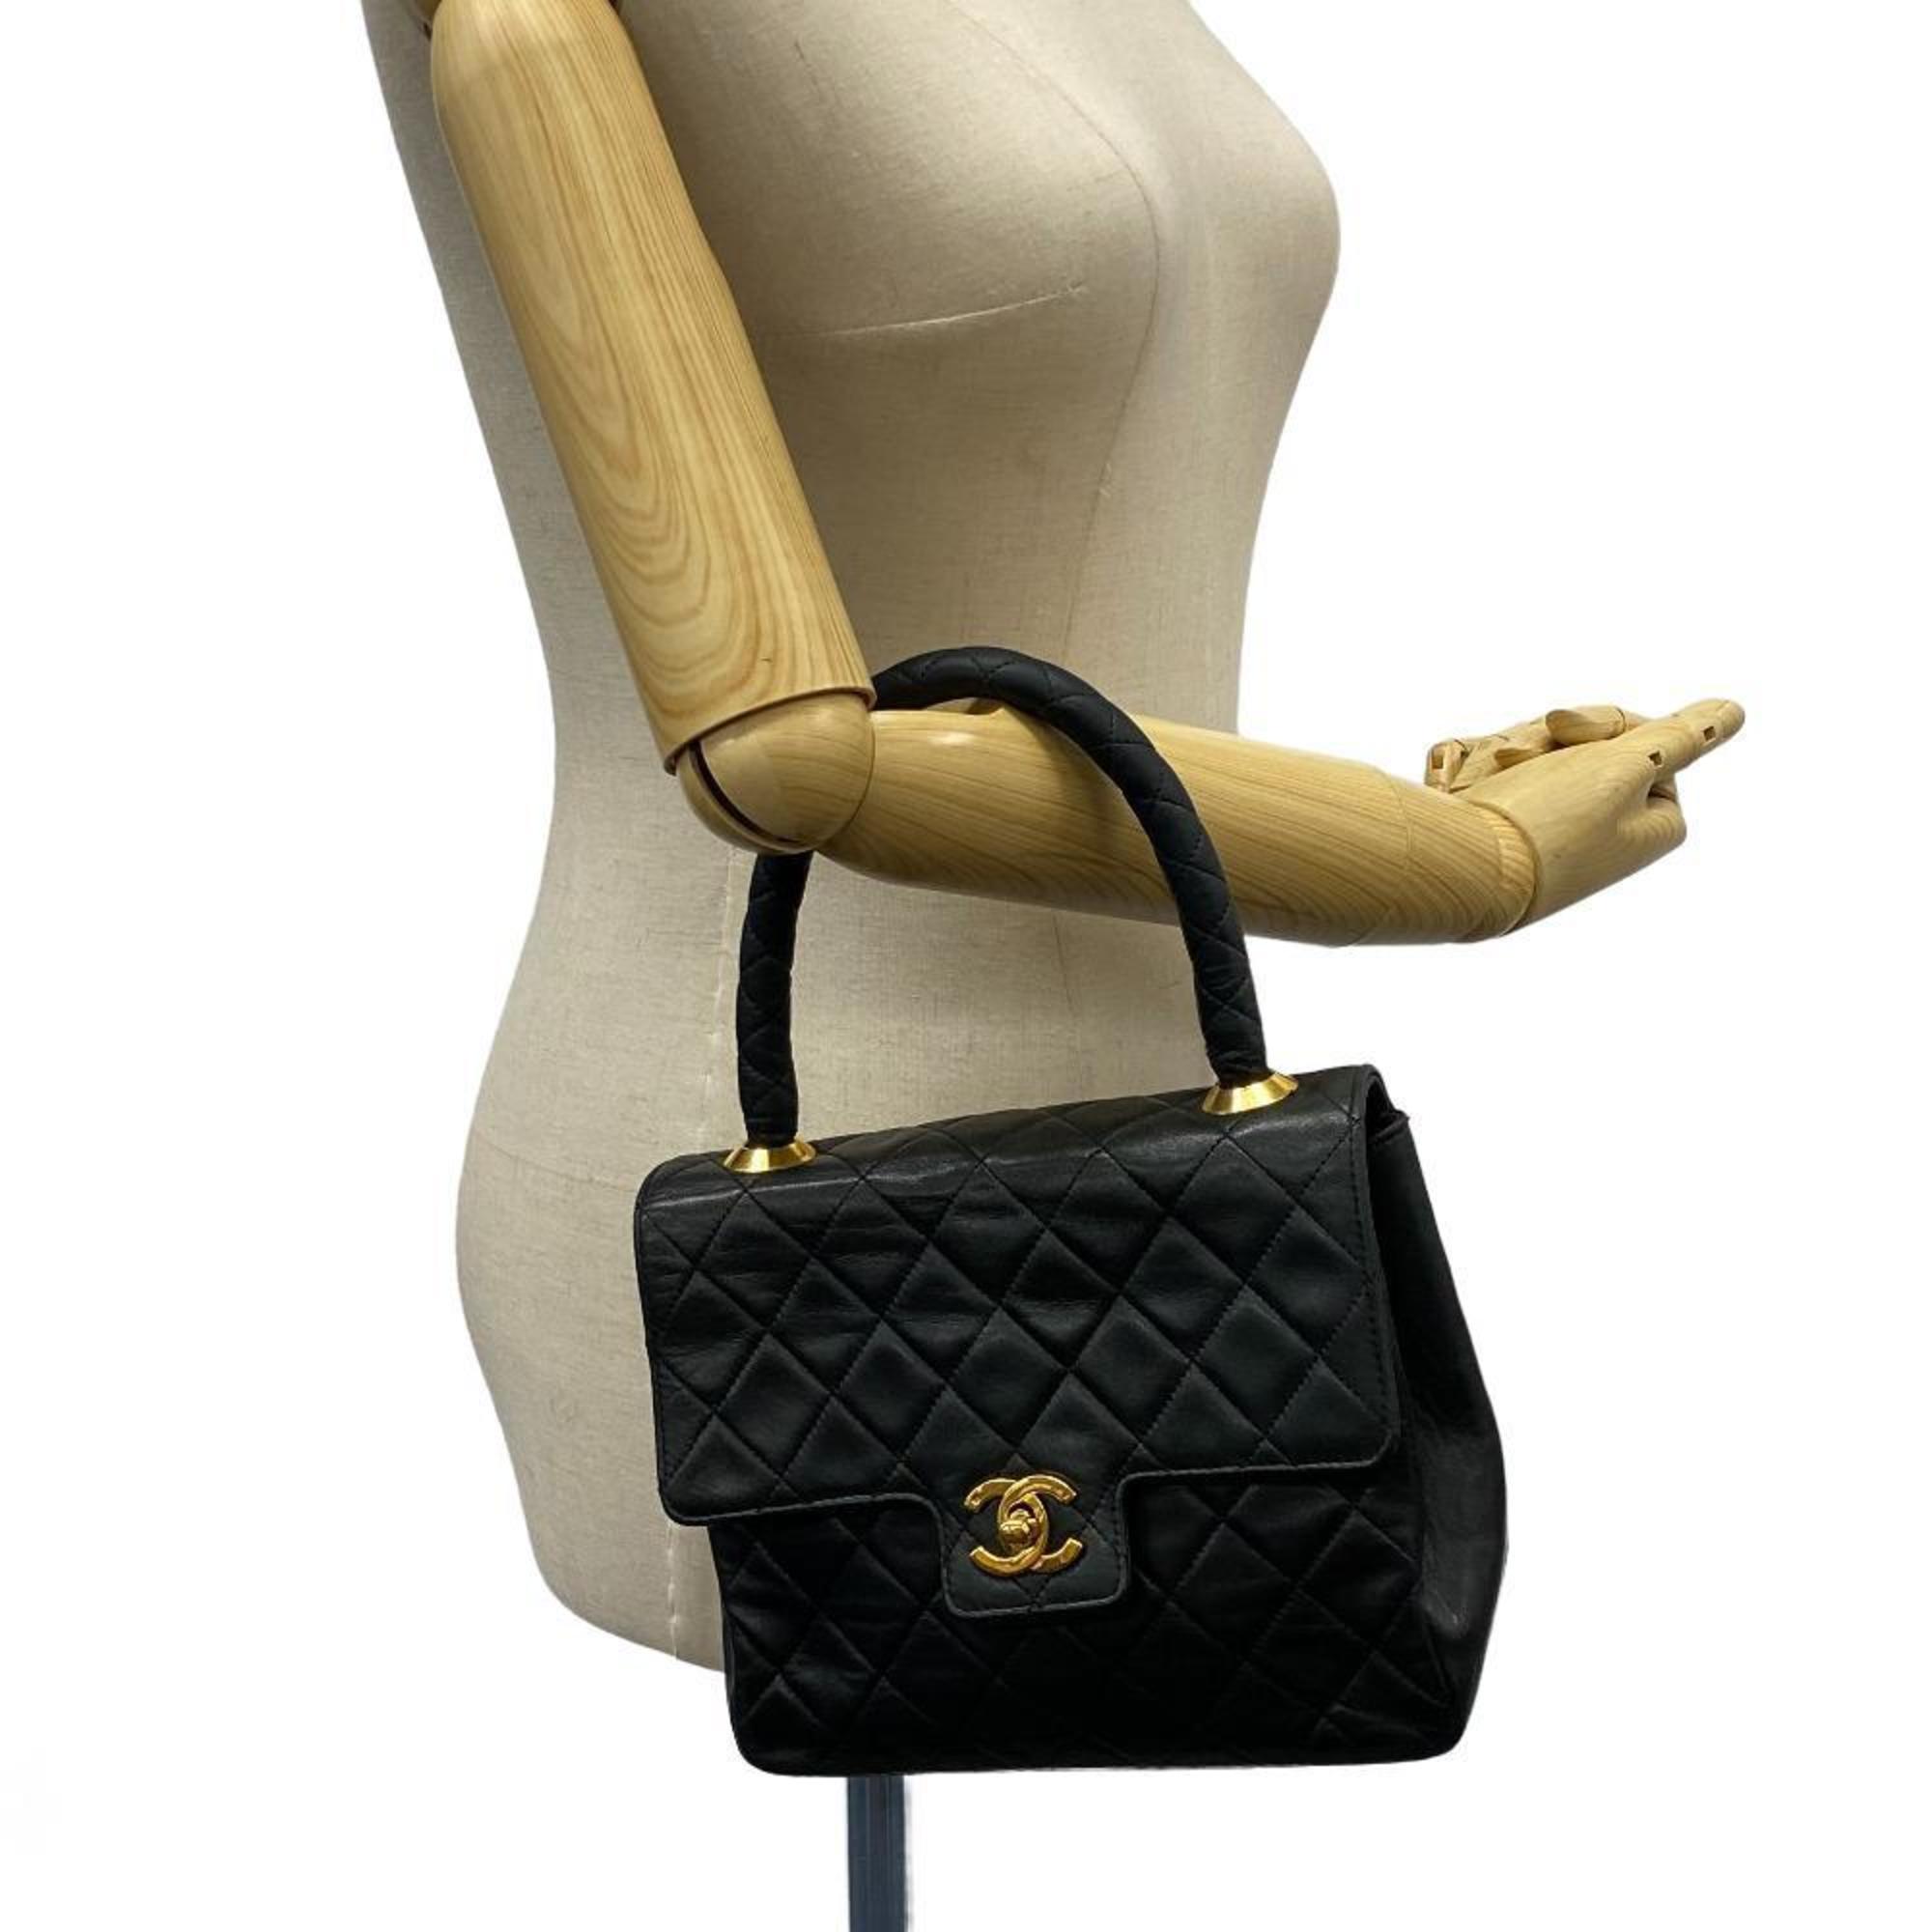 CHANEL Matelasse Turnlock Vintage Handbag Black Ladies